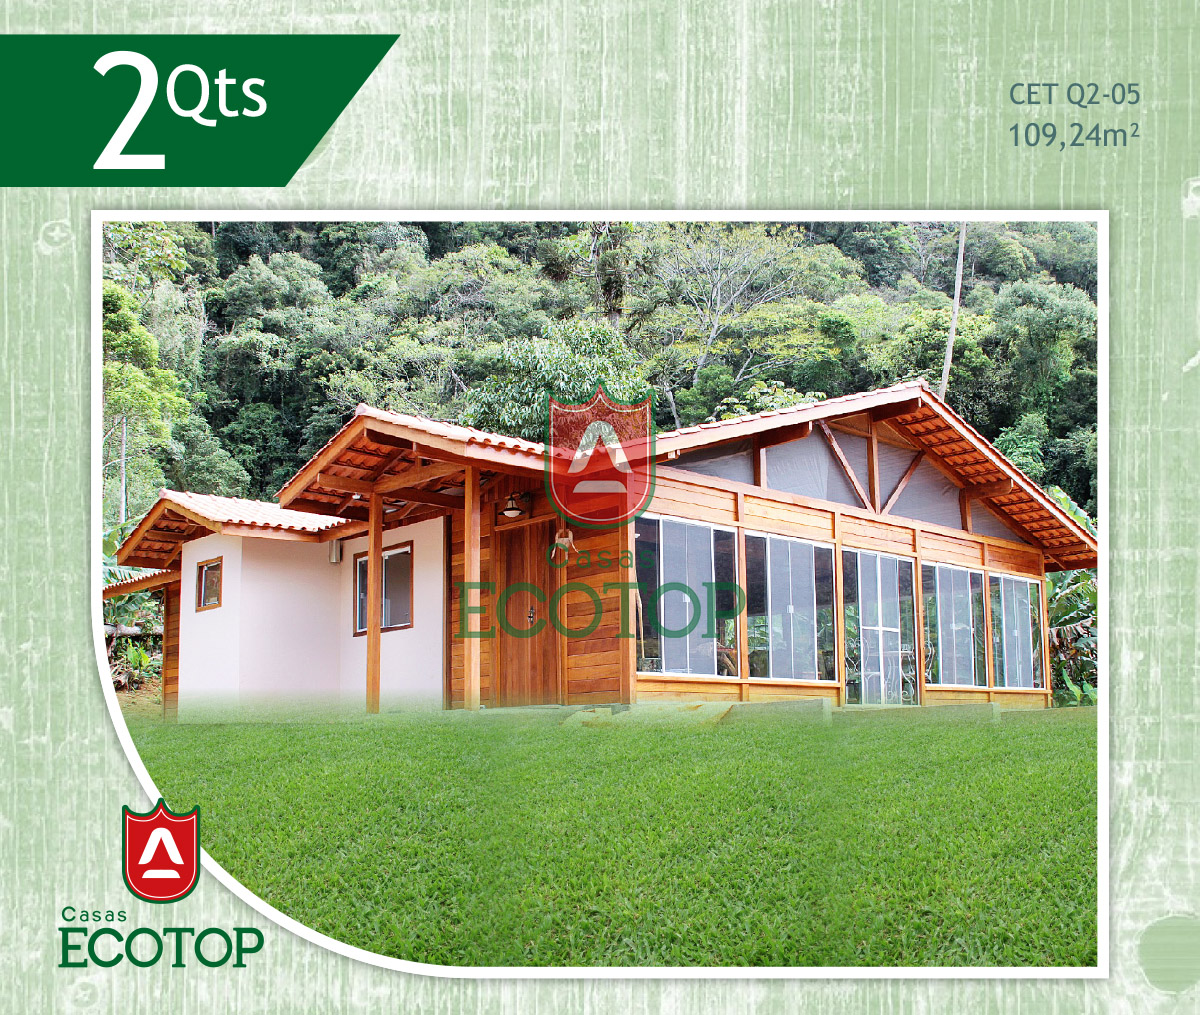 cet-05-fachada-casas-de-madeira-ecotop.cdr